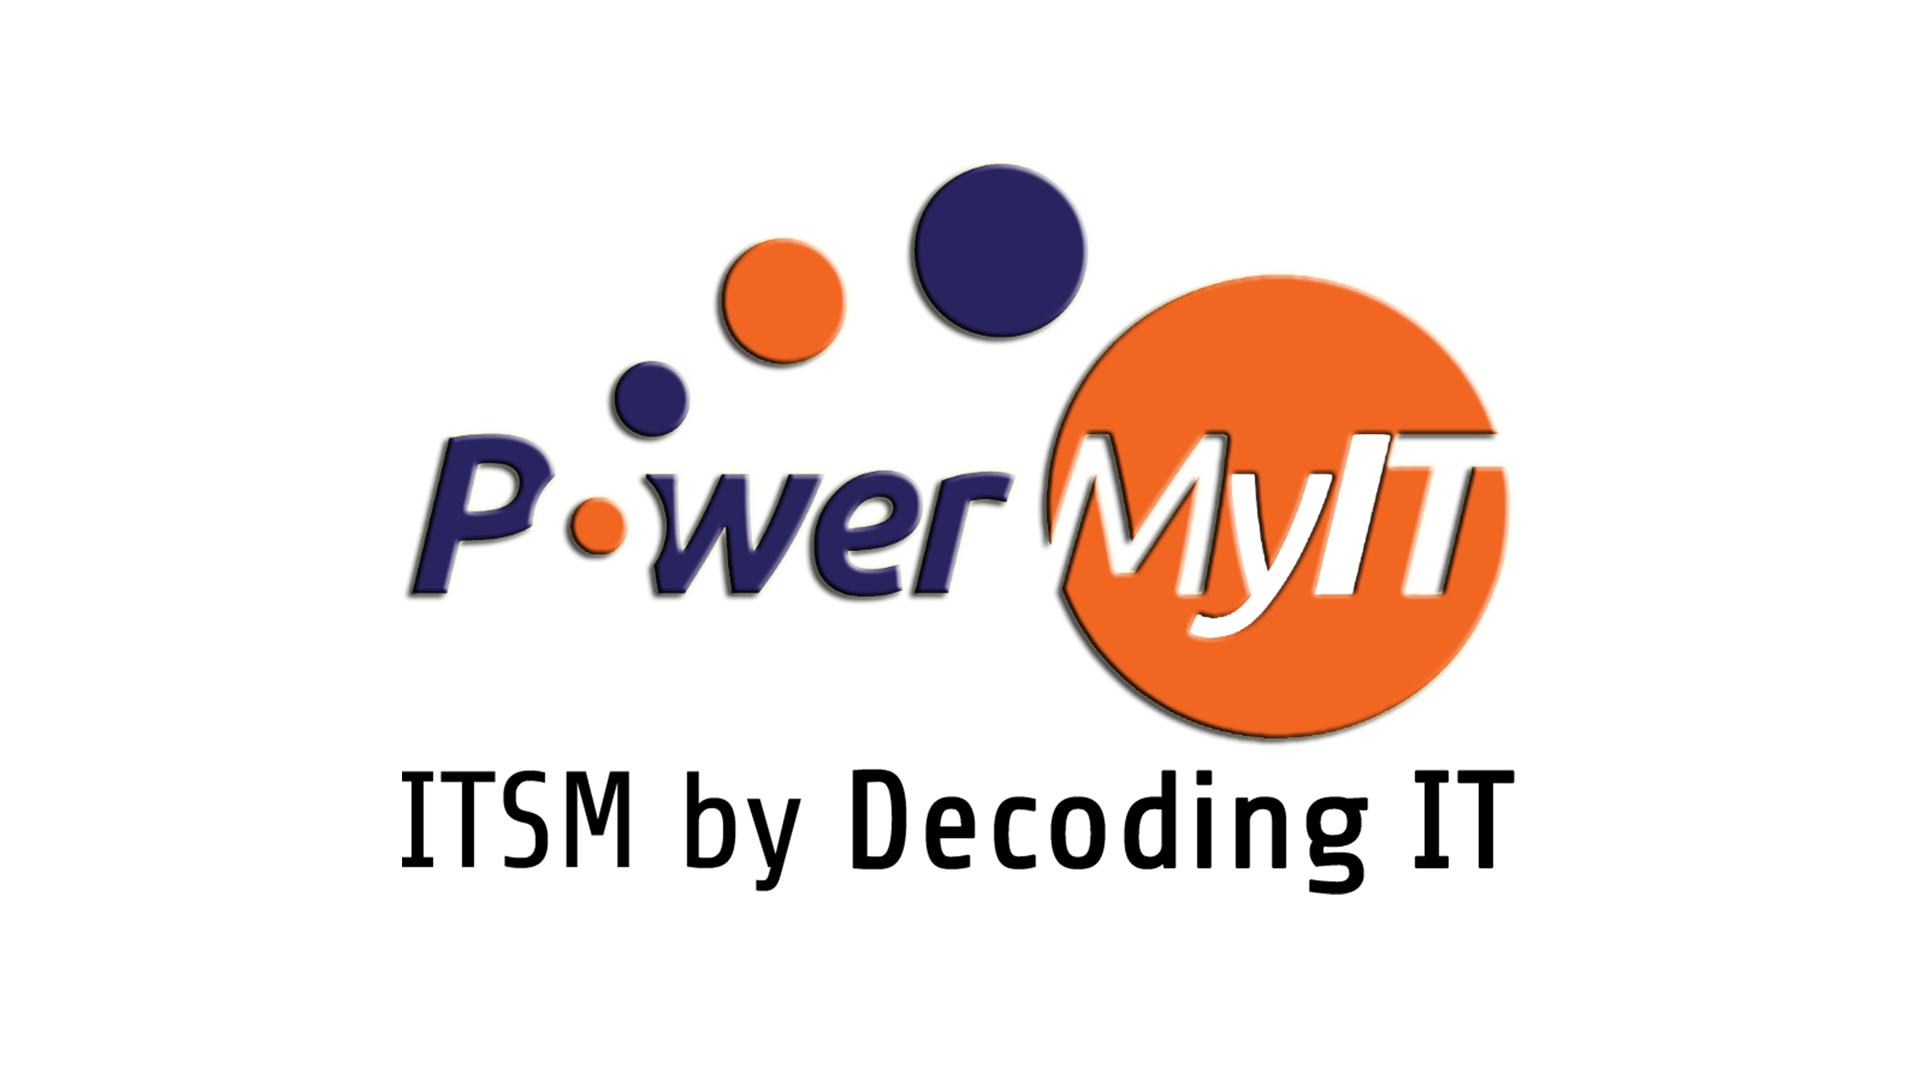 Power MyIT